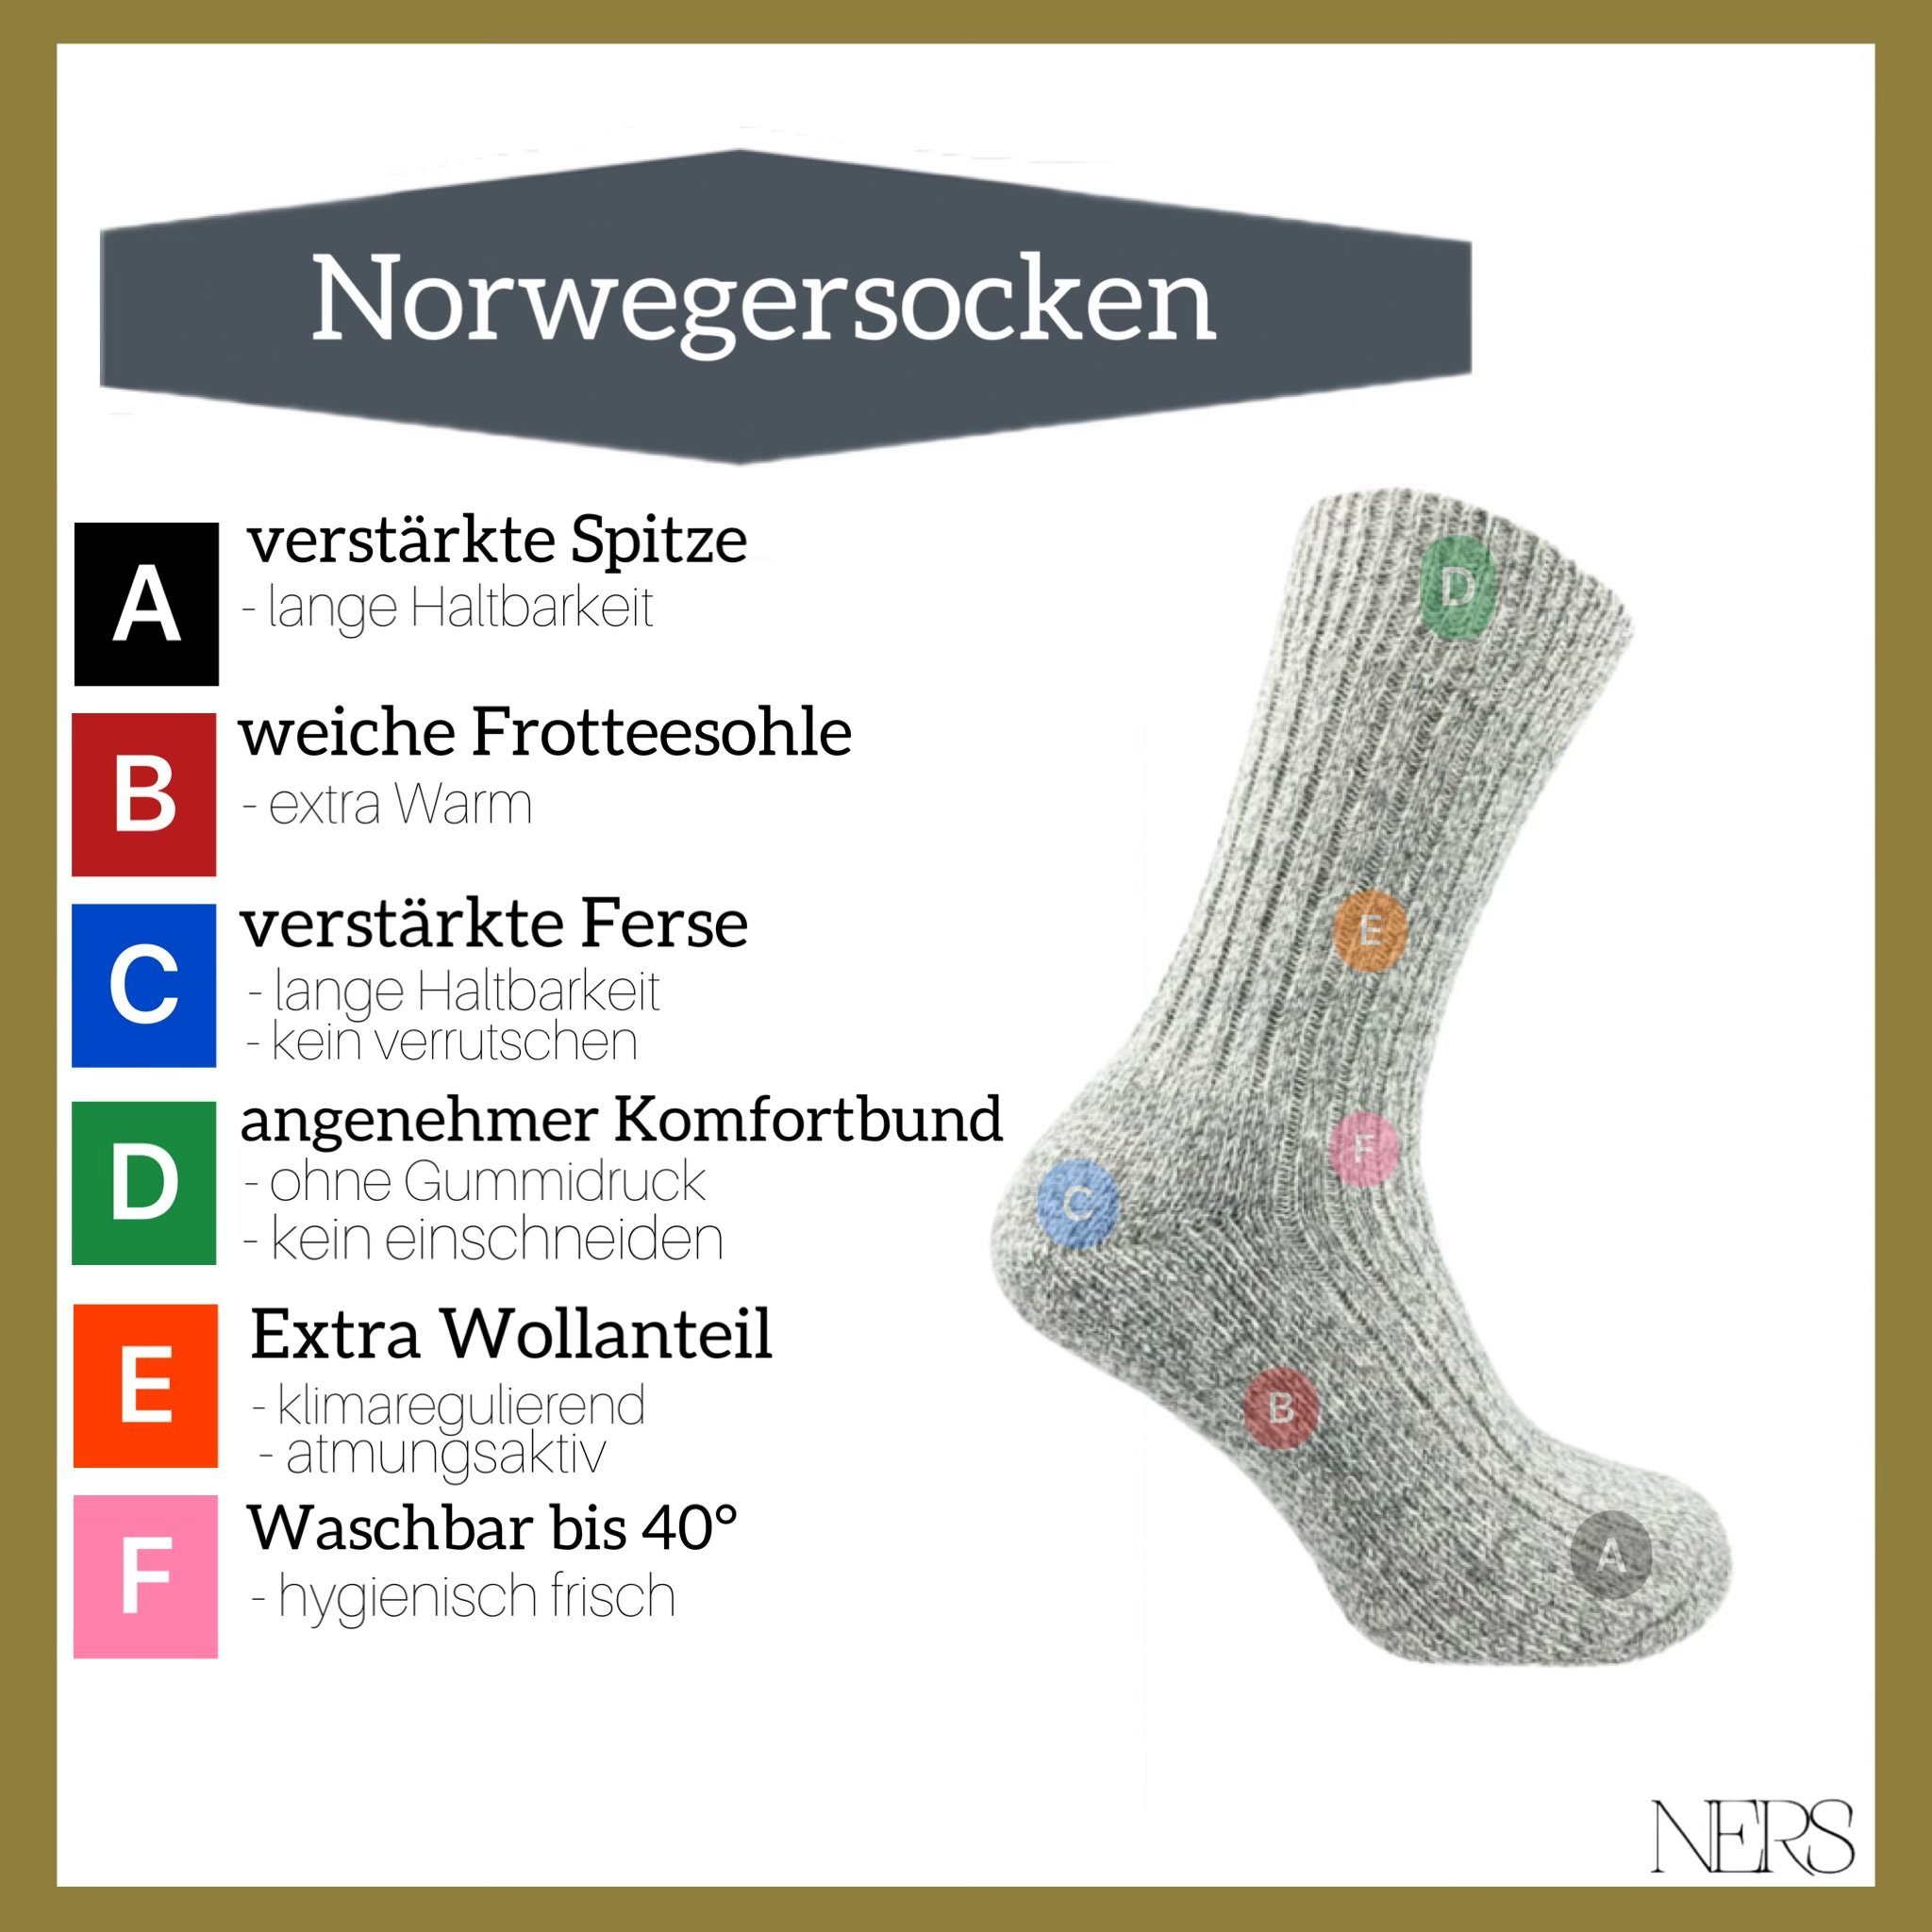 NERS (6-Paar) Damen weicher Wintersocken mit und für Grau/Anthrazit Frotteesohle Wolle aus Herren Norwegersocken